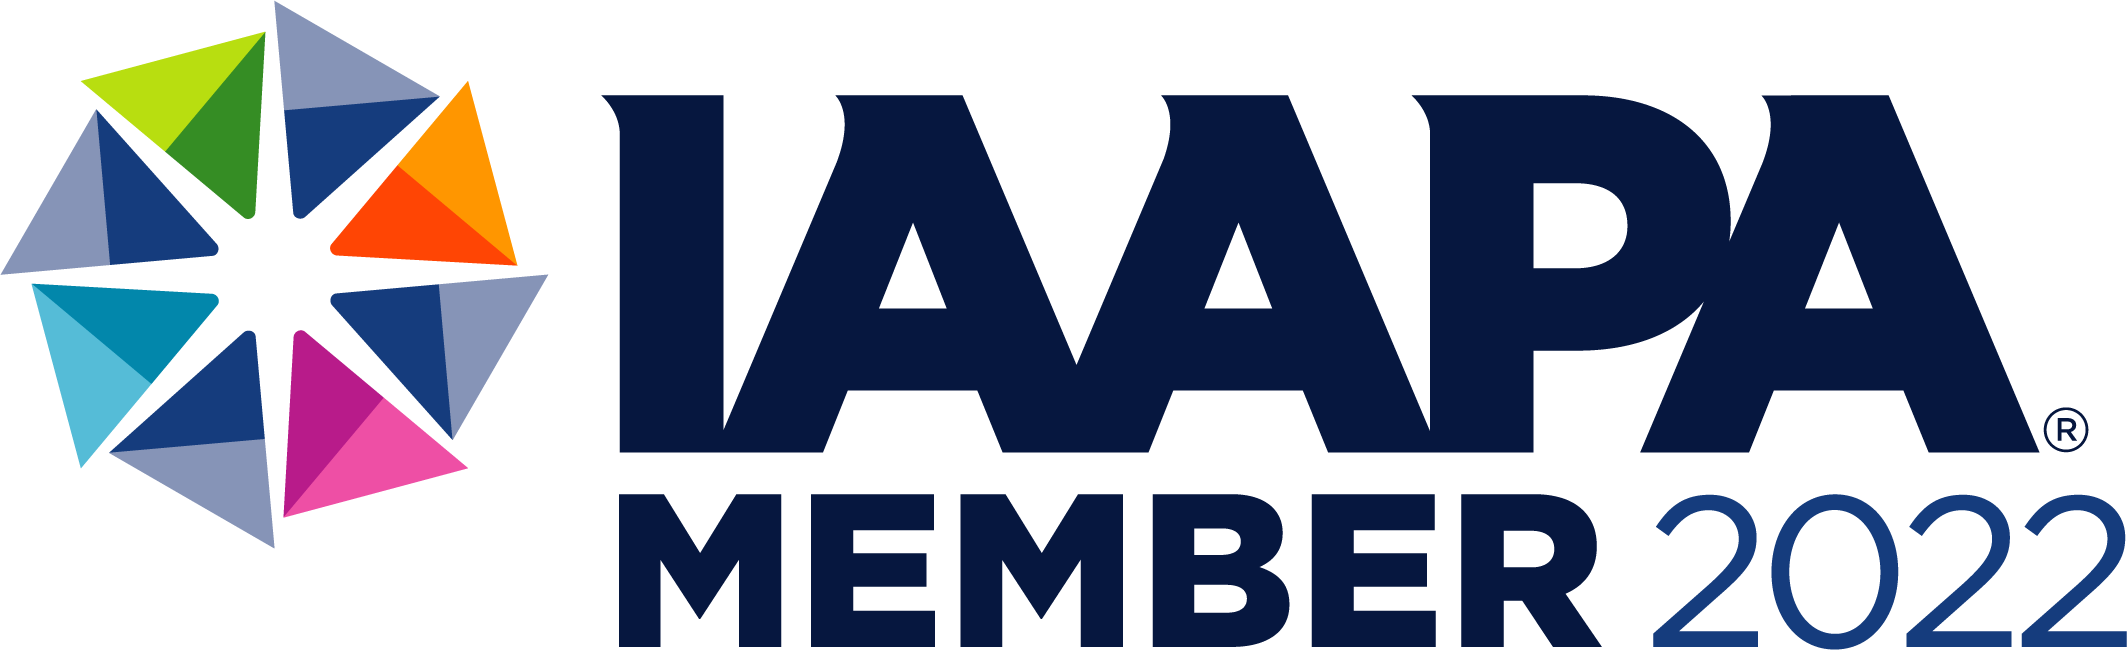 TICKAMORE es miembro IAAPA 2022